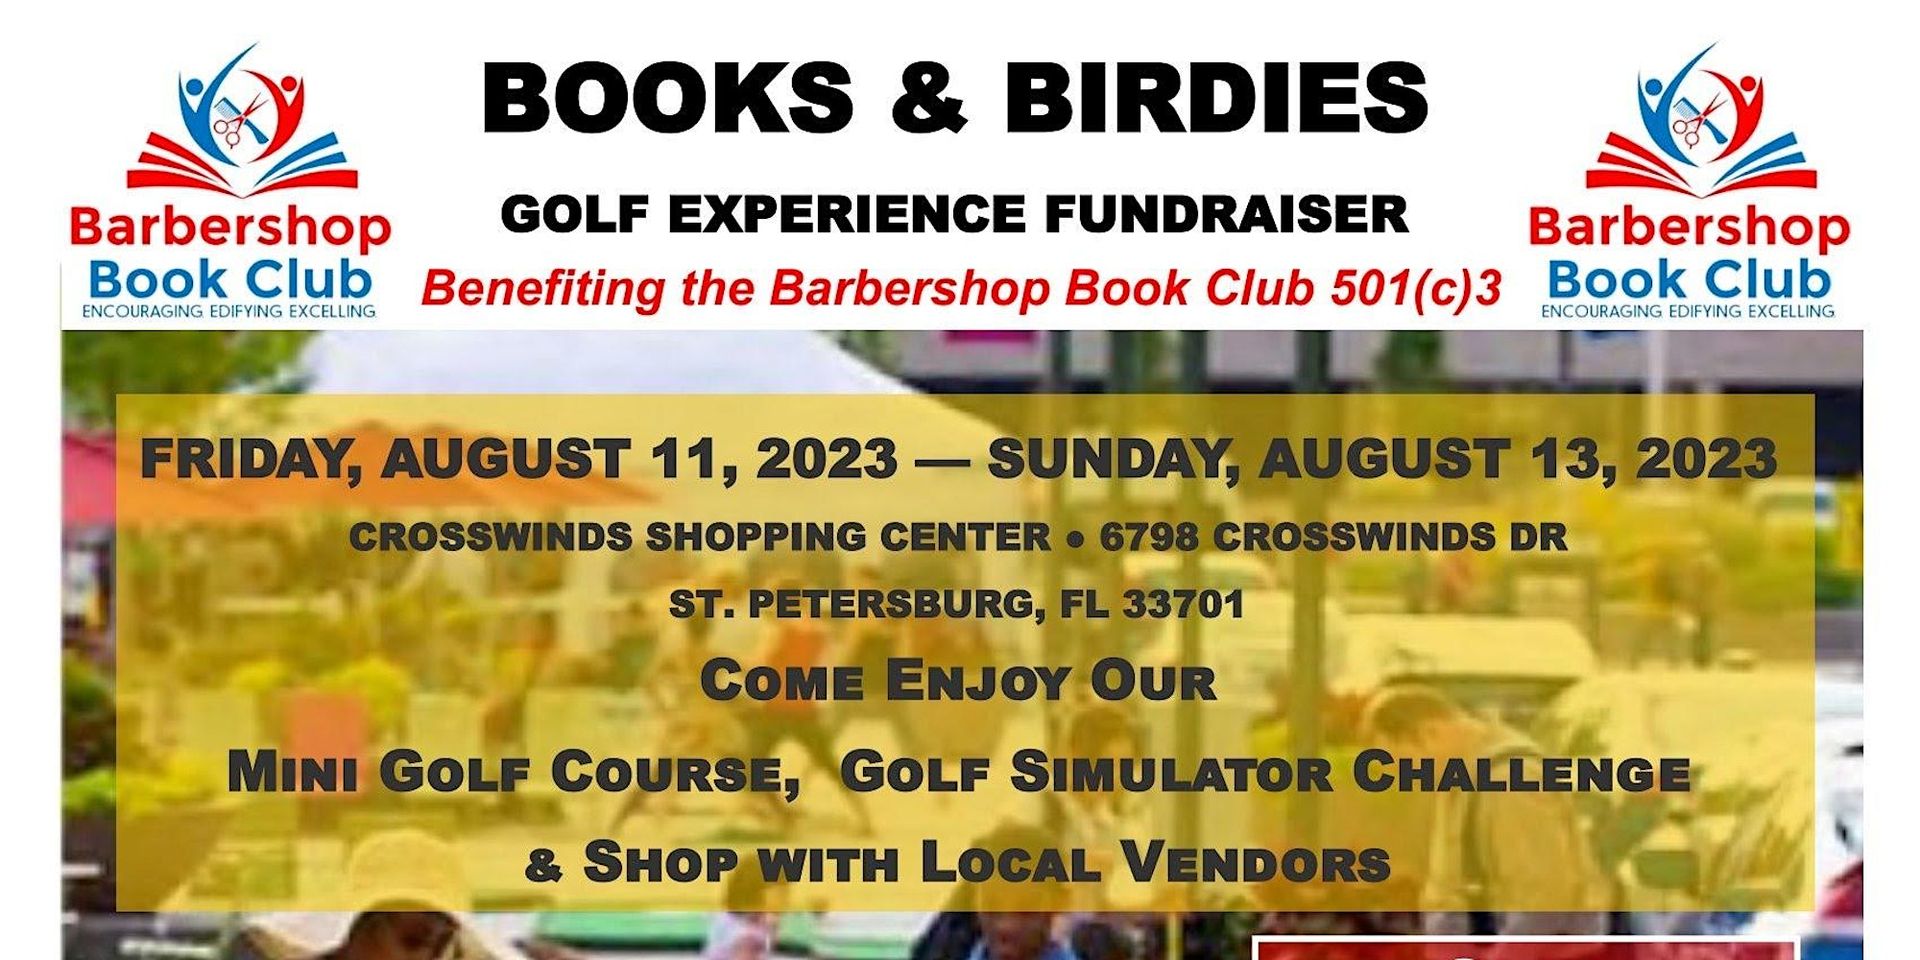 Books & Birdies Fundraiser